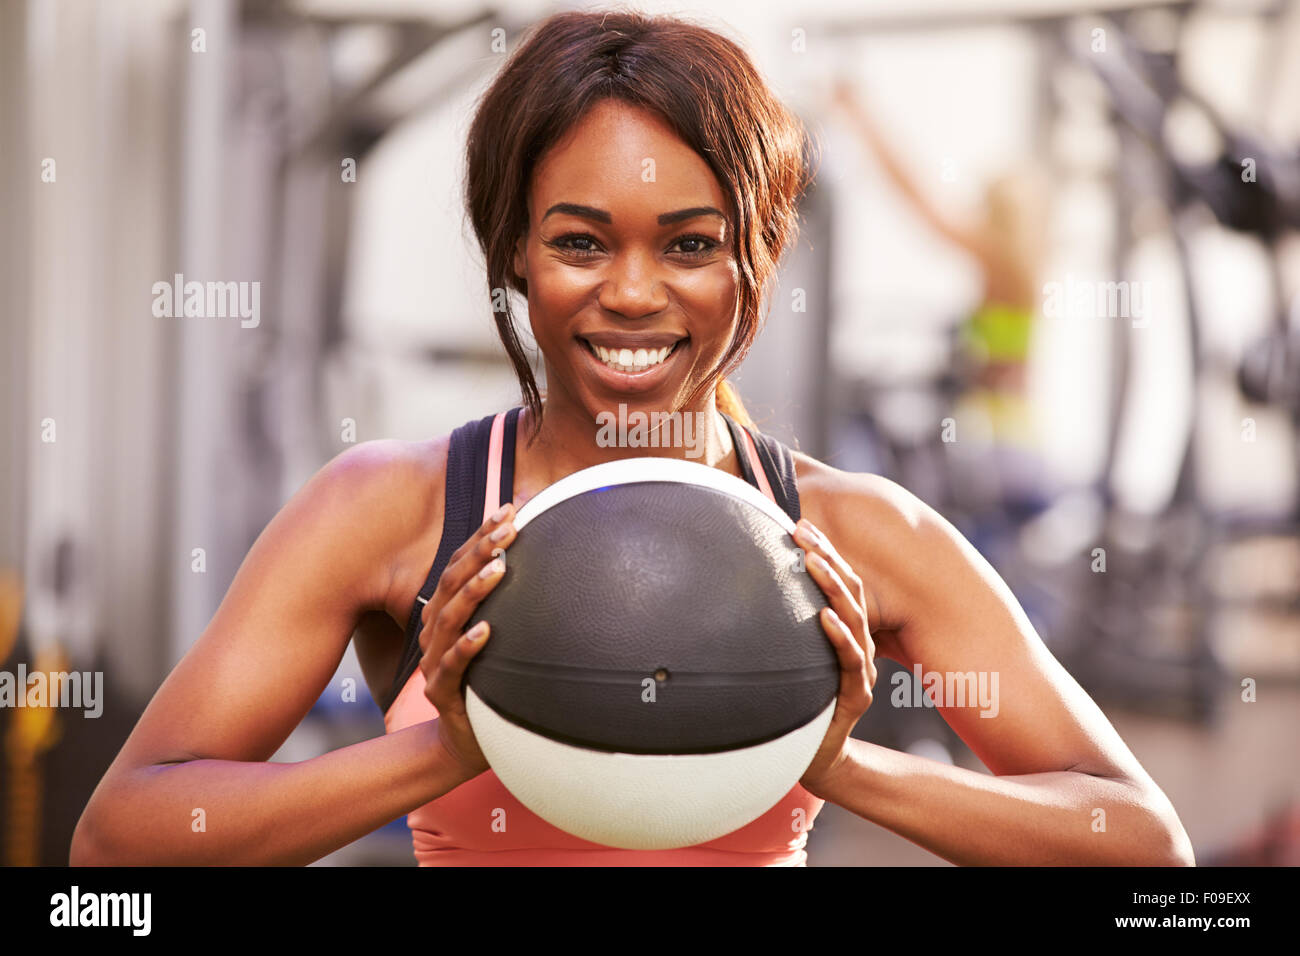 Porträt einer lächelnden Frau hält einen Medizinball in einem Fitnessstudio Stockfoto